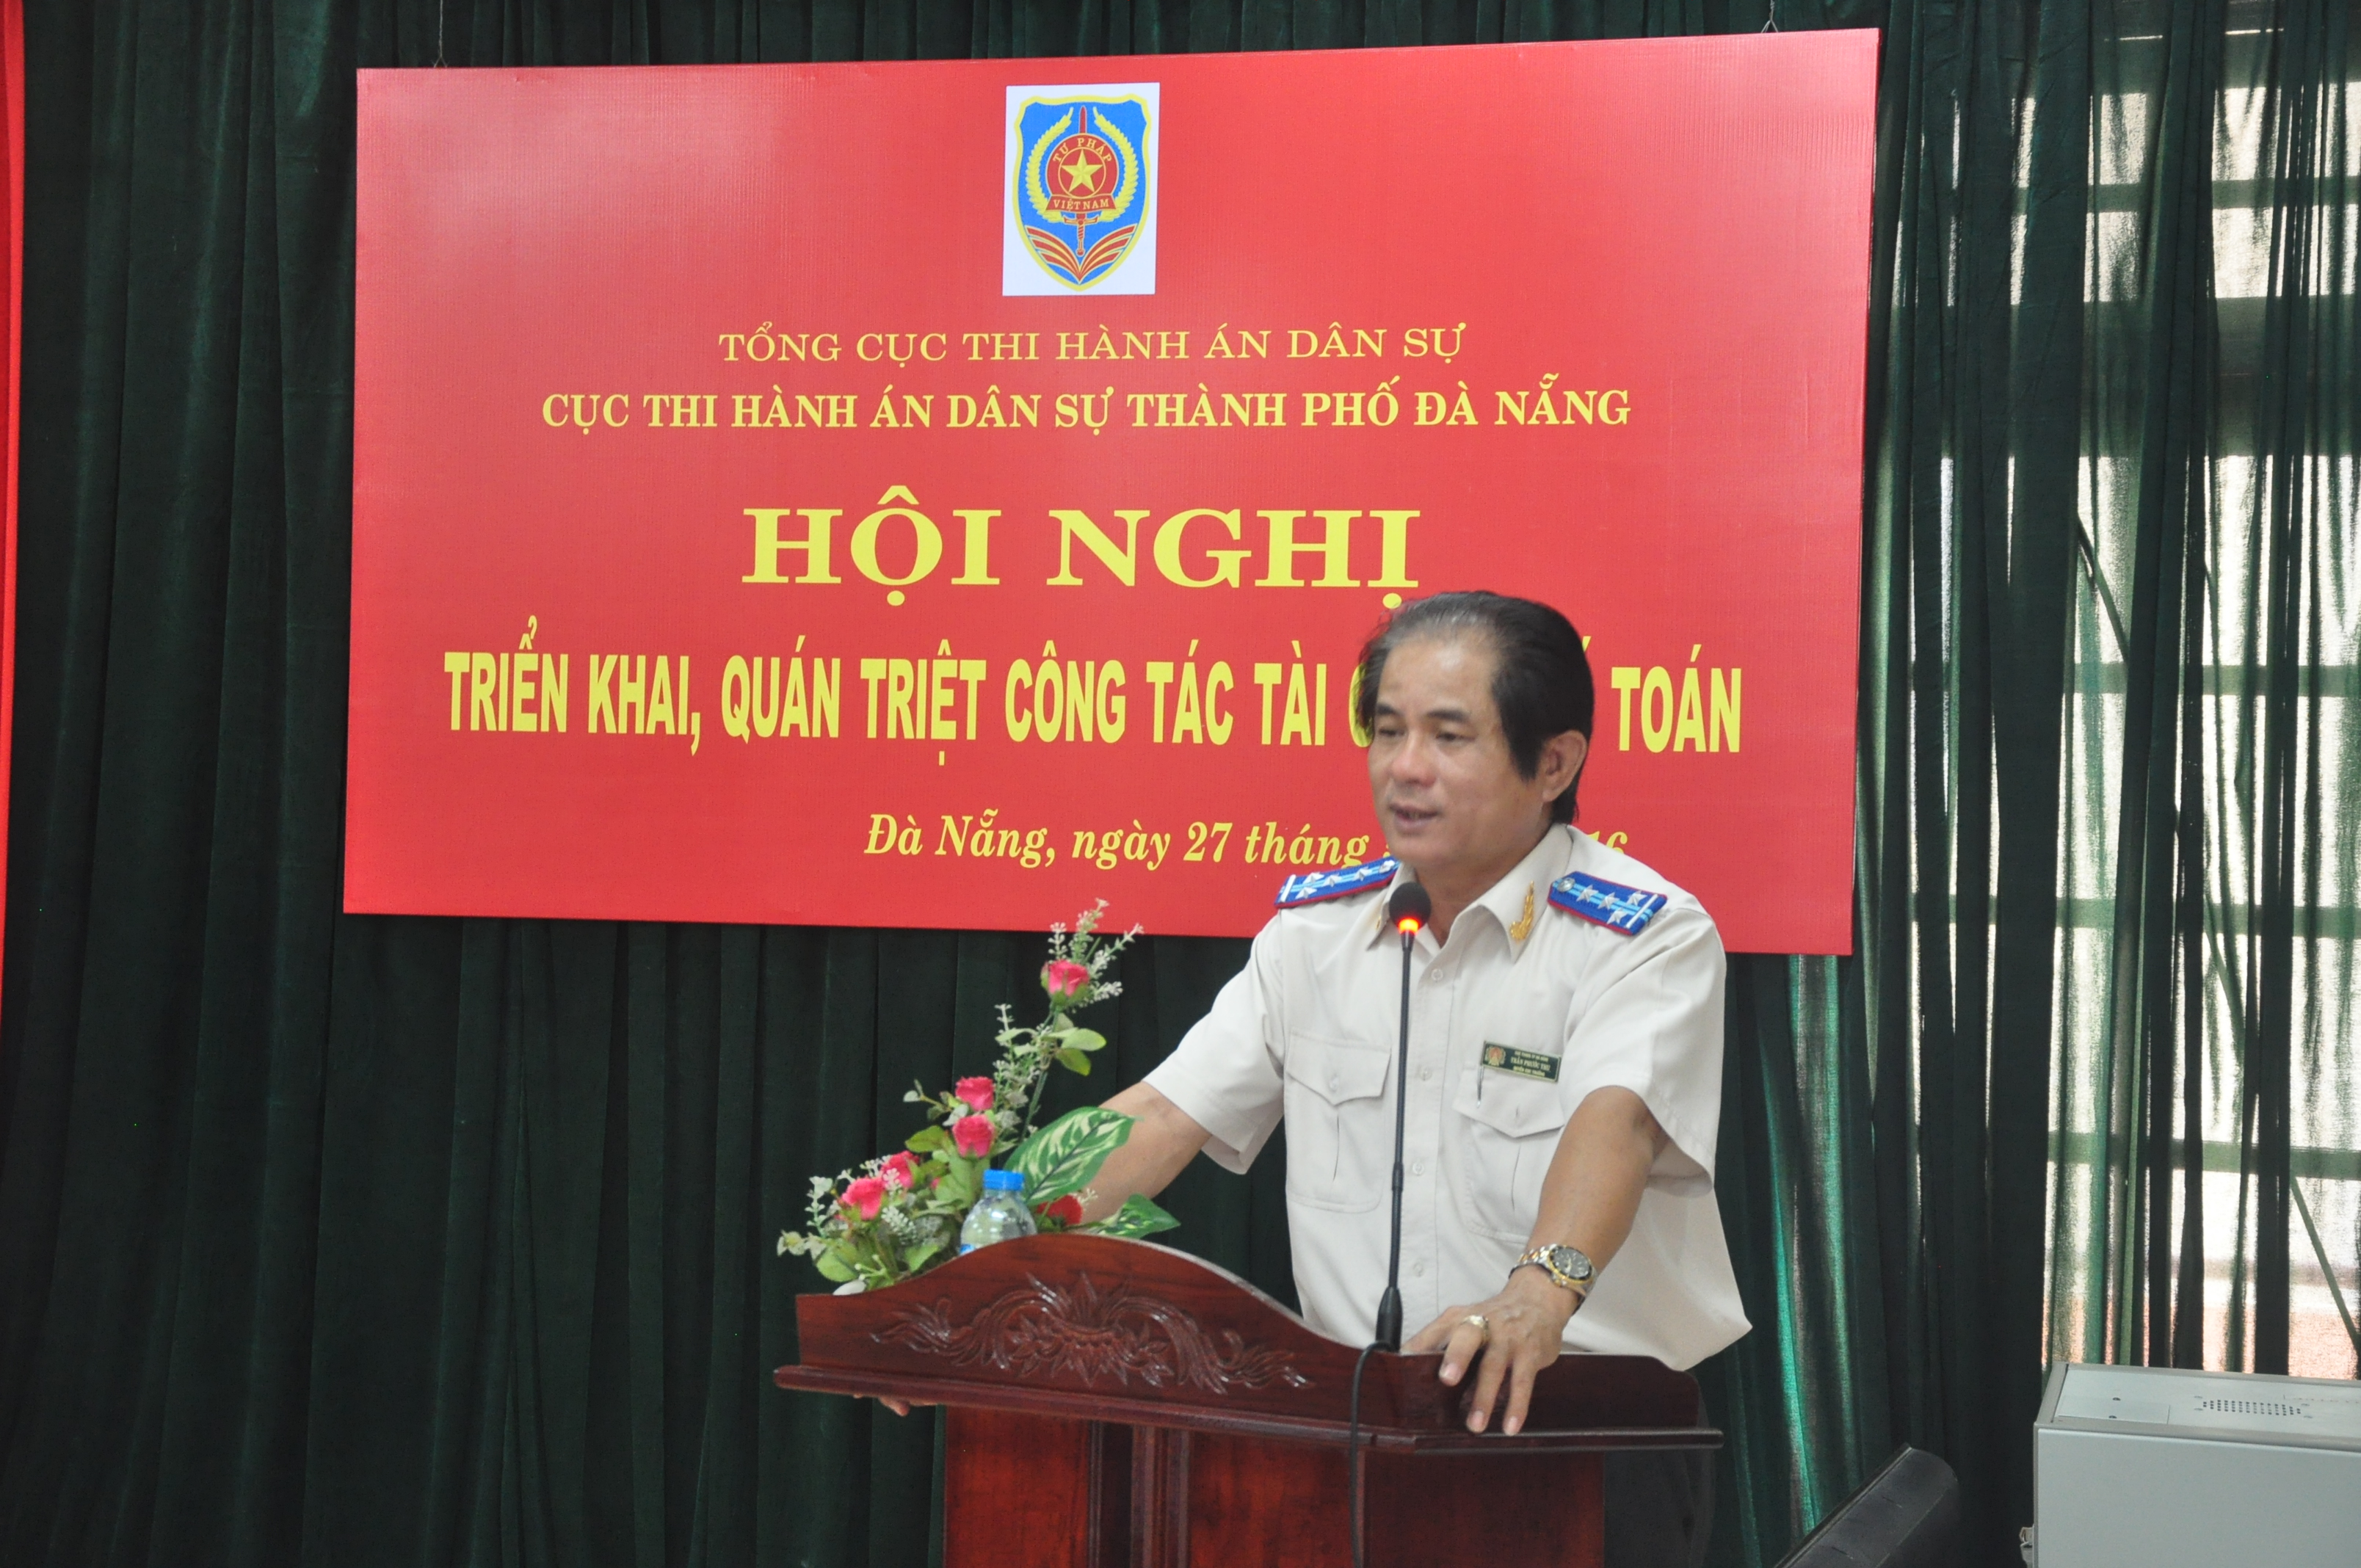 Cục Thi hành án dân sự thành phố Đà Nẵng  Tổ chức Hội nghị triển khai, quán triệt công tác tài chính, kế toán